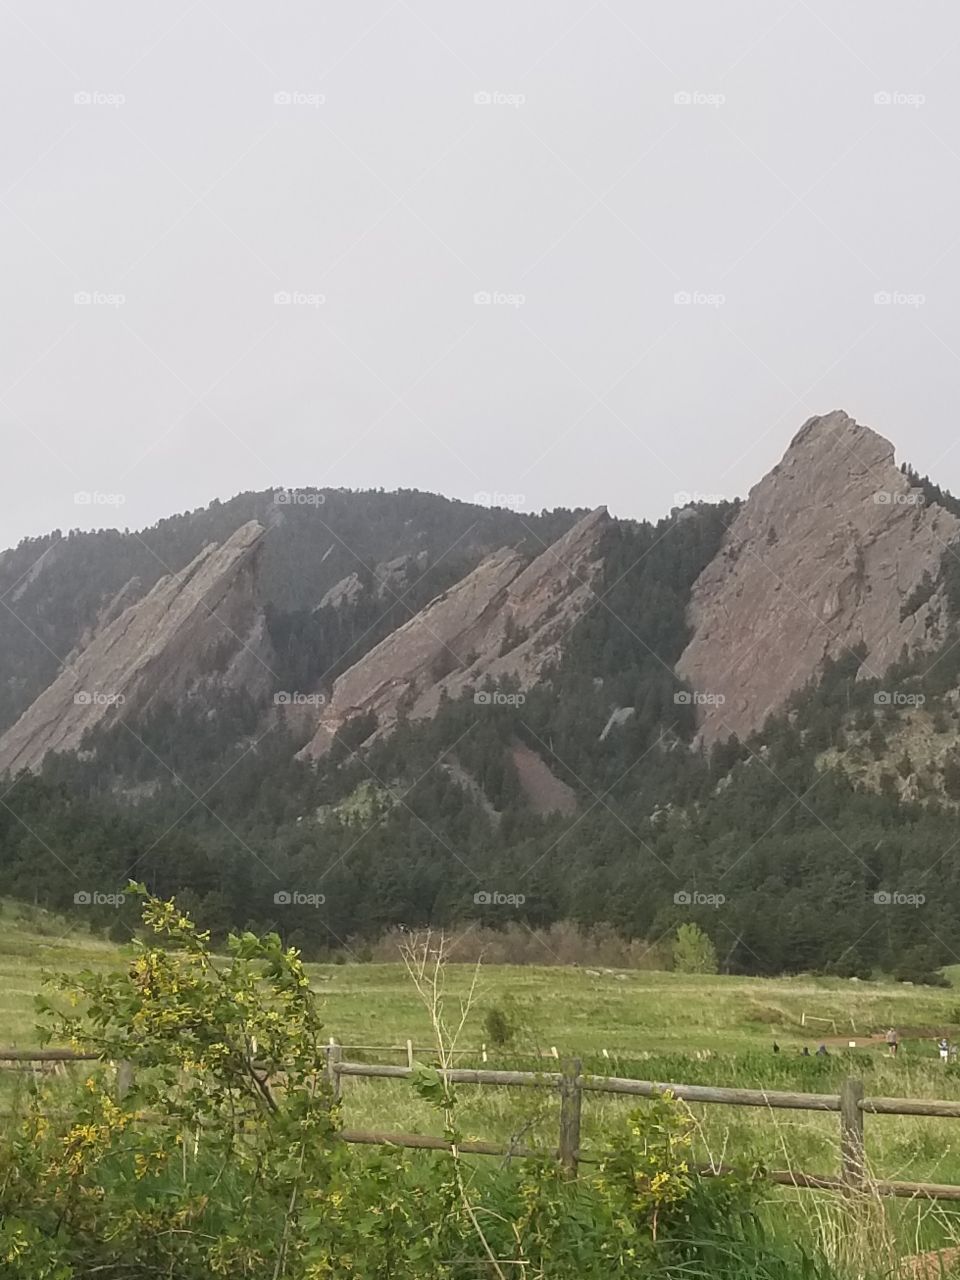 Boulder, Co